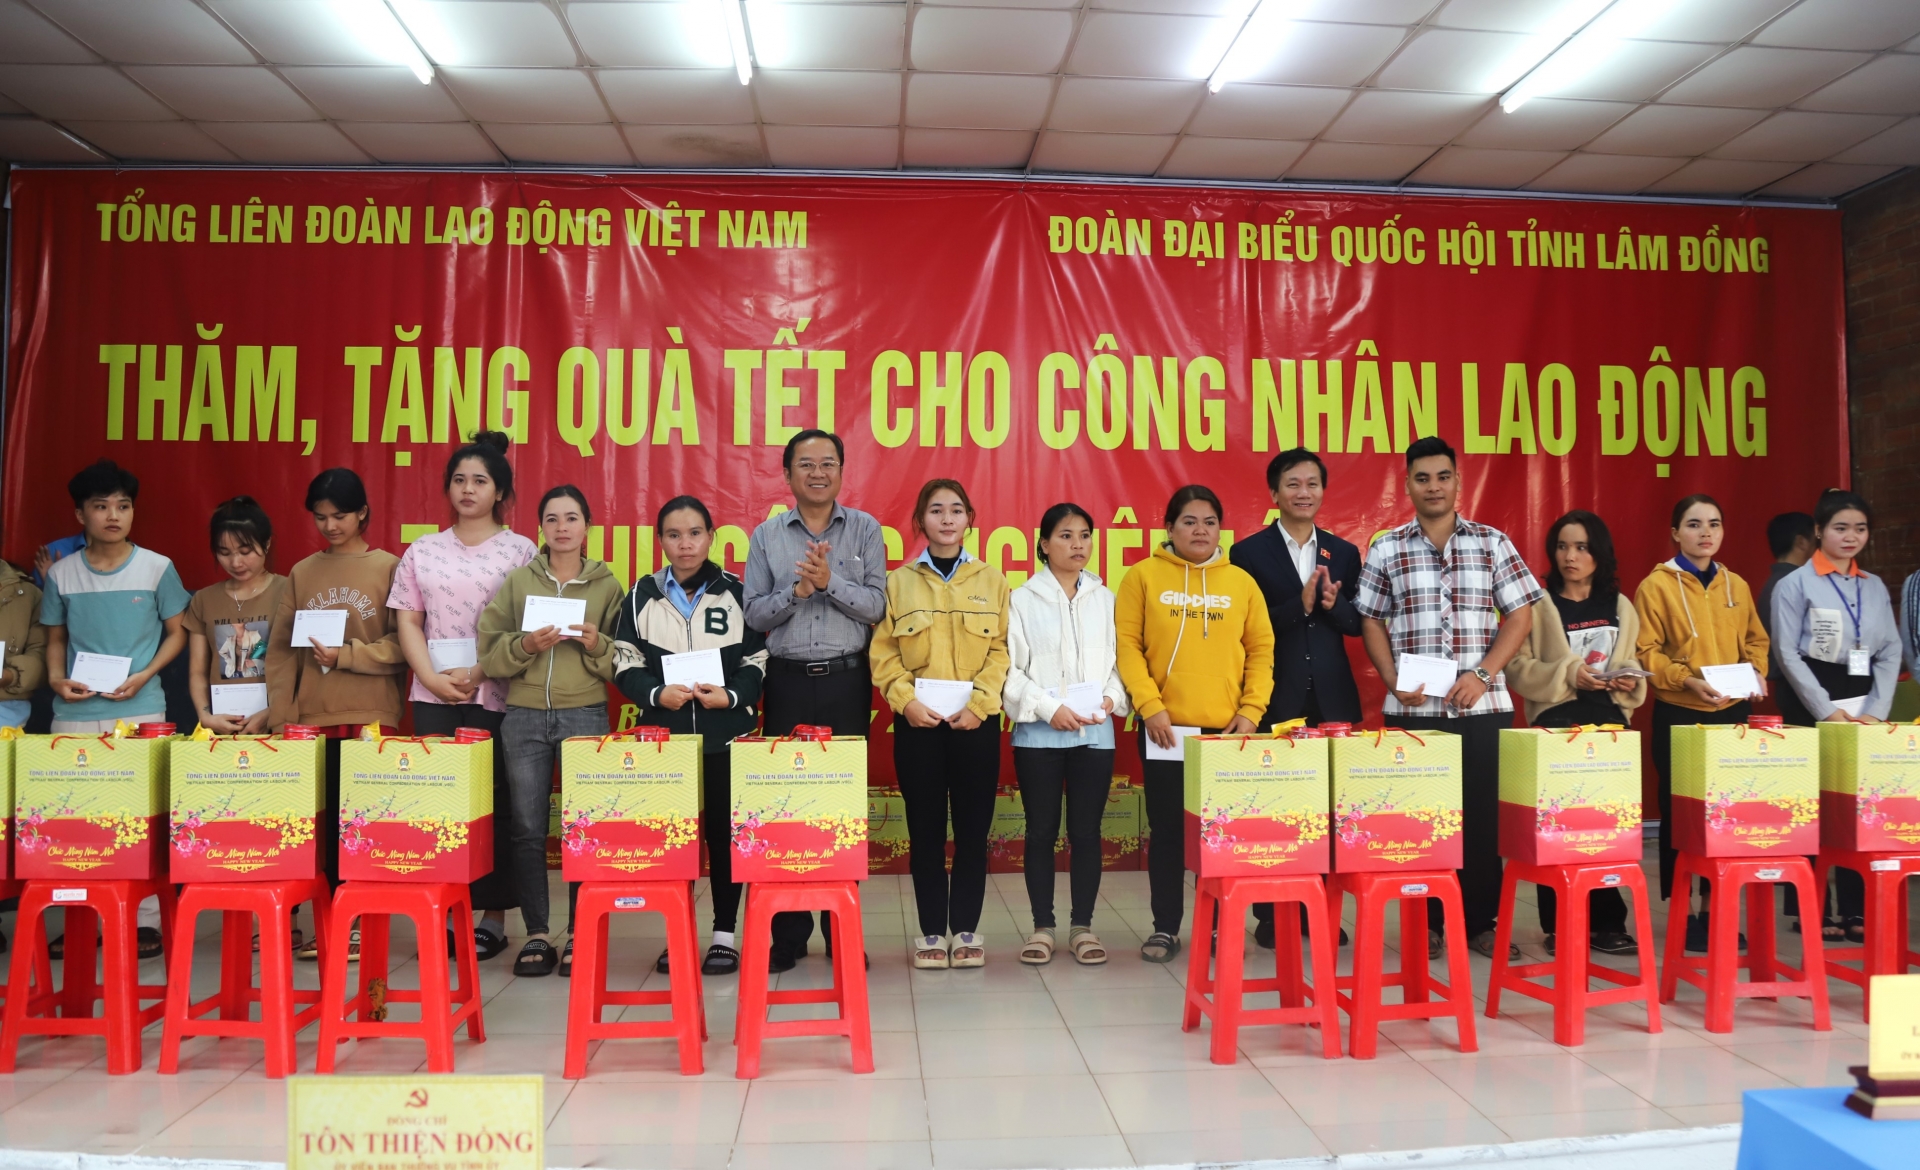 Đồng chí Lâm Văn Đoan – Phó Chủ nhiệm Ủy ban Xã hội của Quốc hội và đồng chí Tôn Thiện Đồng - Bí thư Thành ủy Bảo Lộc trao tặng quà Tết cho công nhân, lao động khó khăn